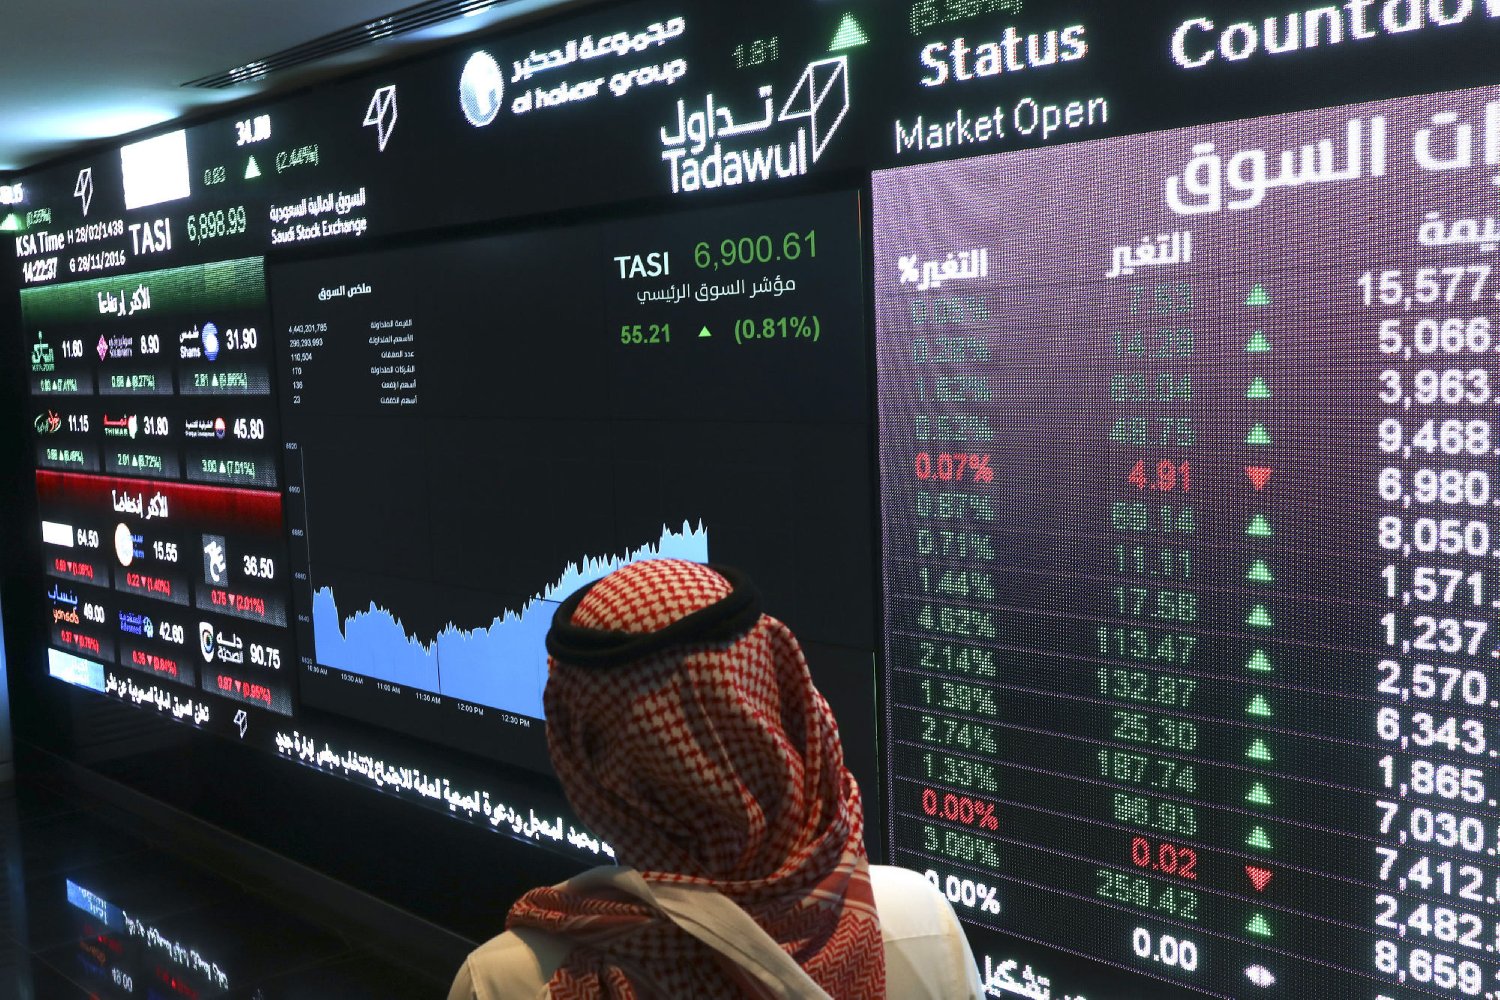 “تداول”: تراجع قيمة الأسهم المملوكة للمستثمرين الخليجيين بنحو ملياري ريال في يناير